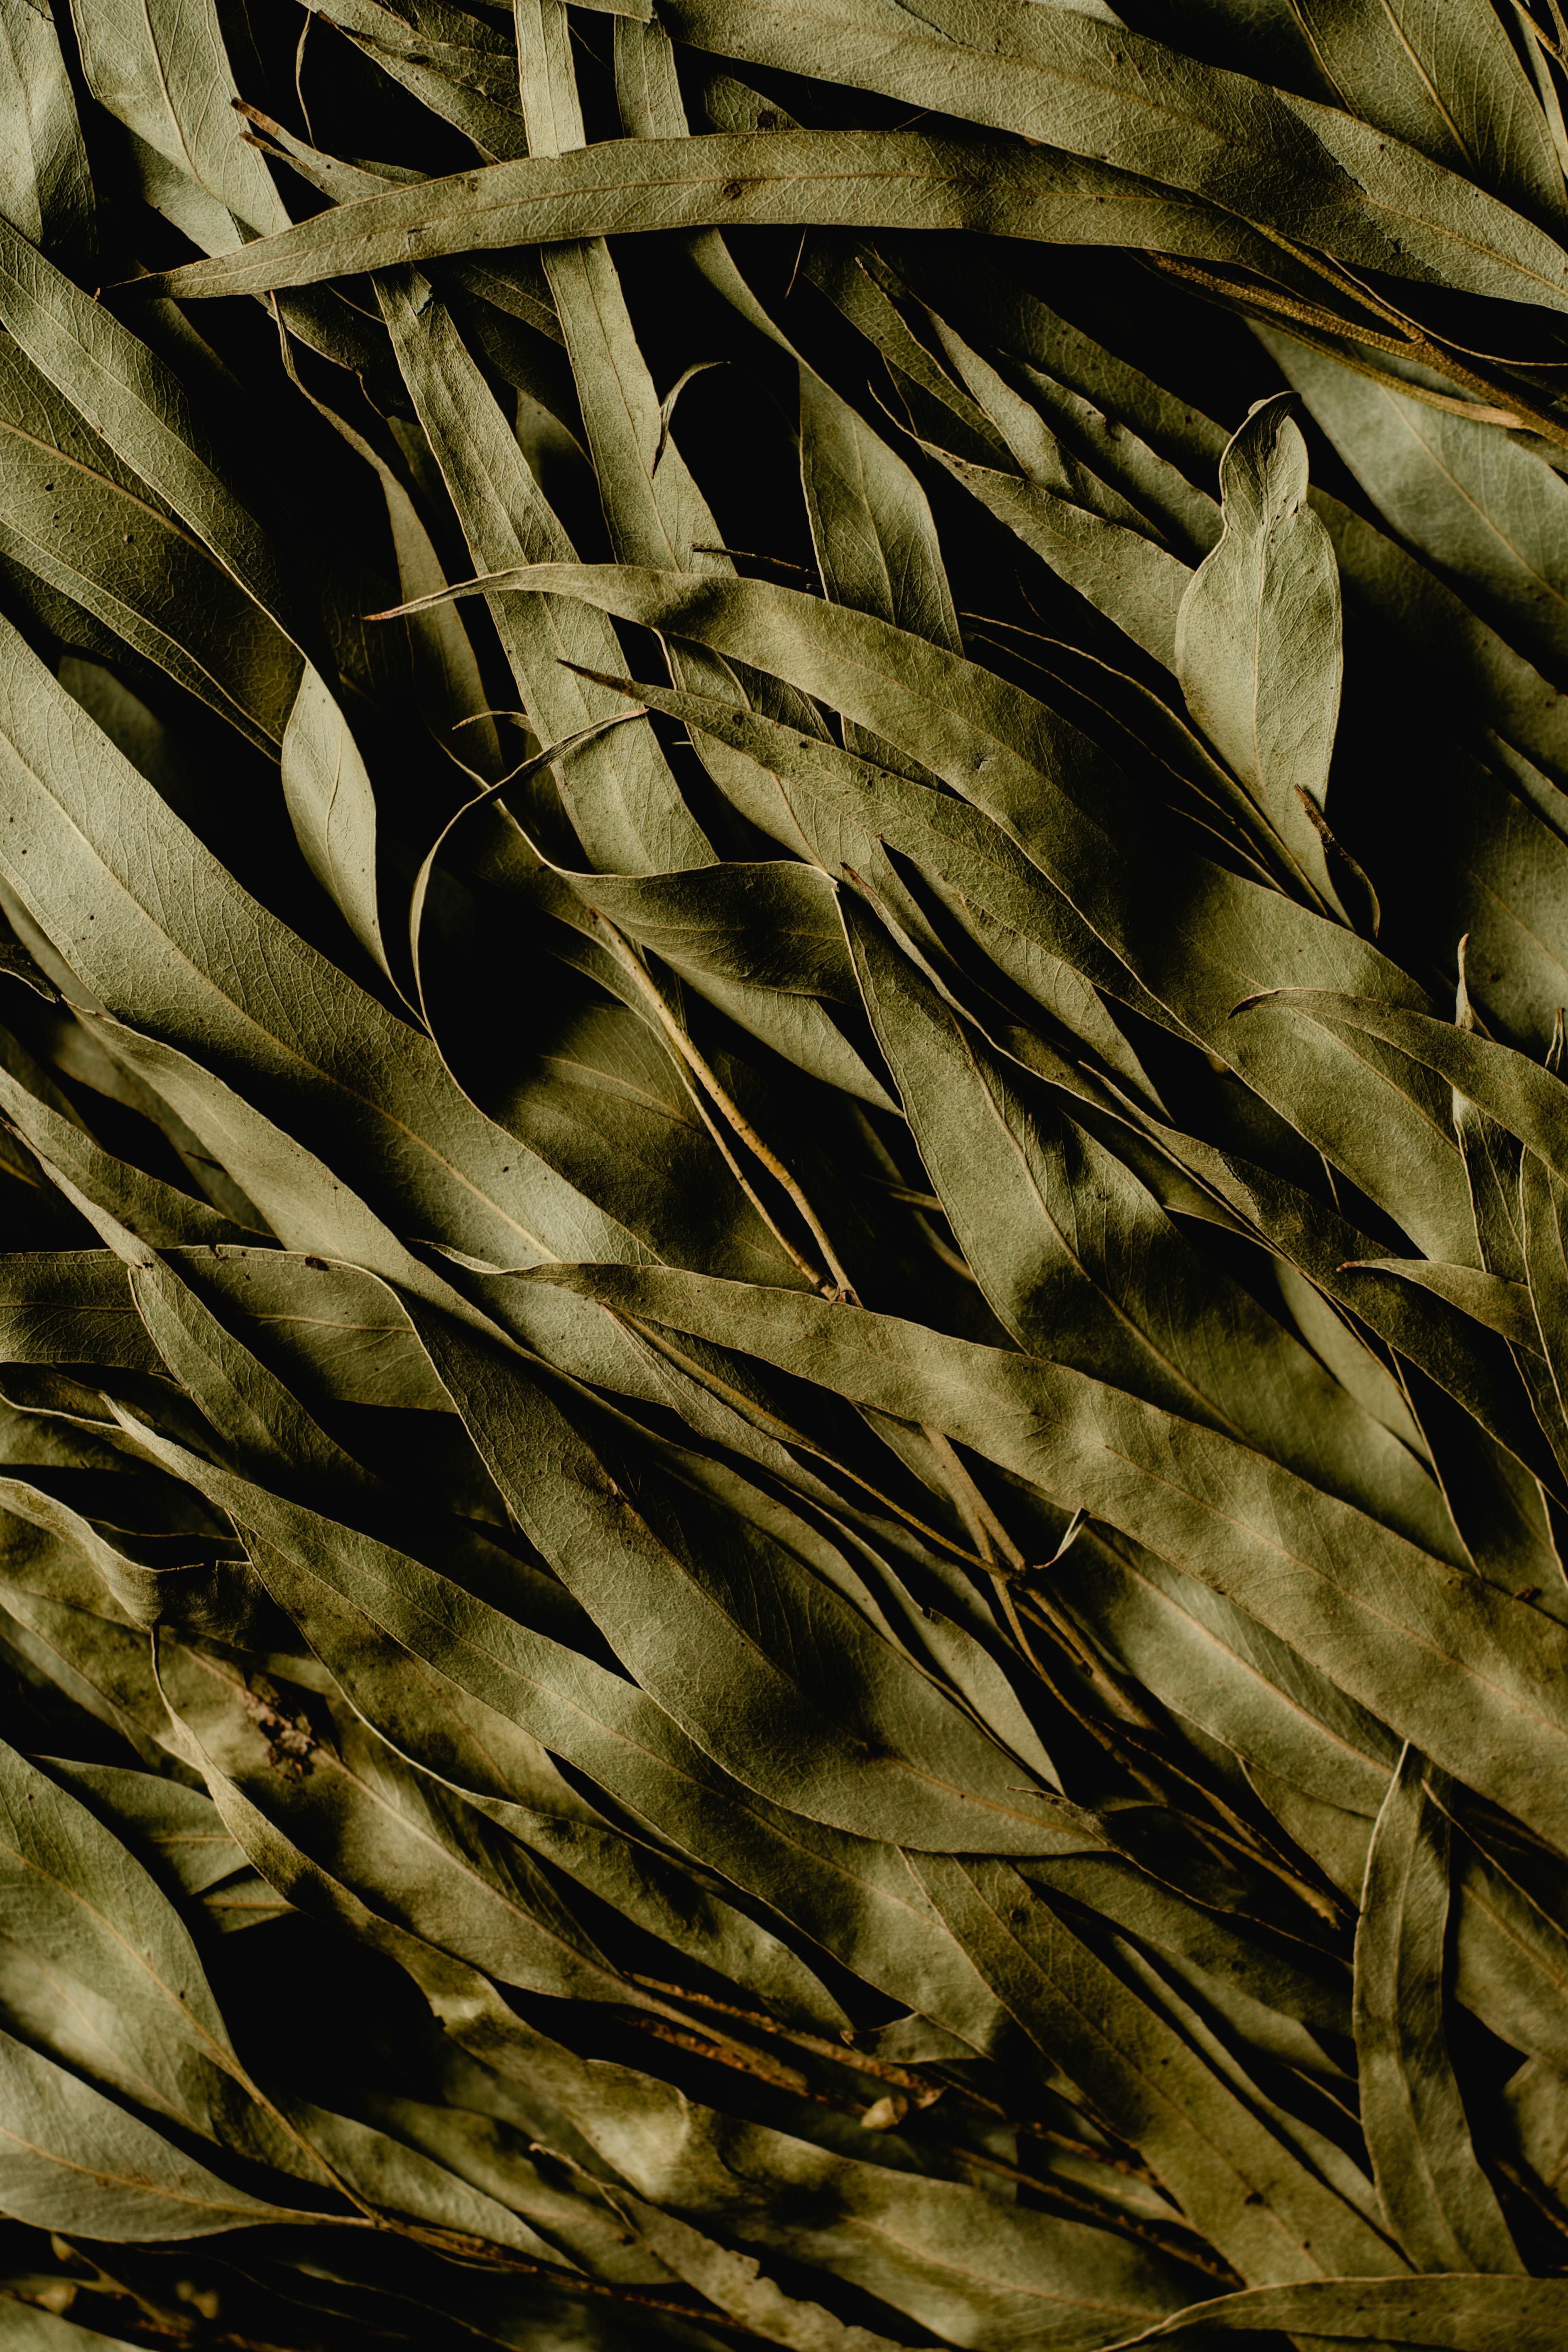 El eucalipto puede utilizarse como té con sus hojas secas. (Foto: Pexels)